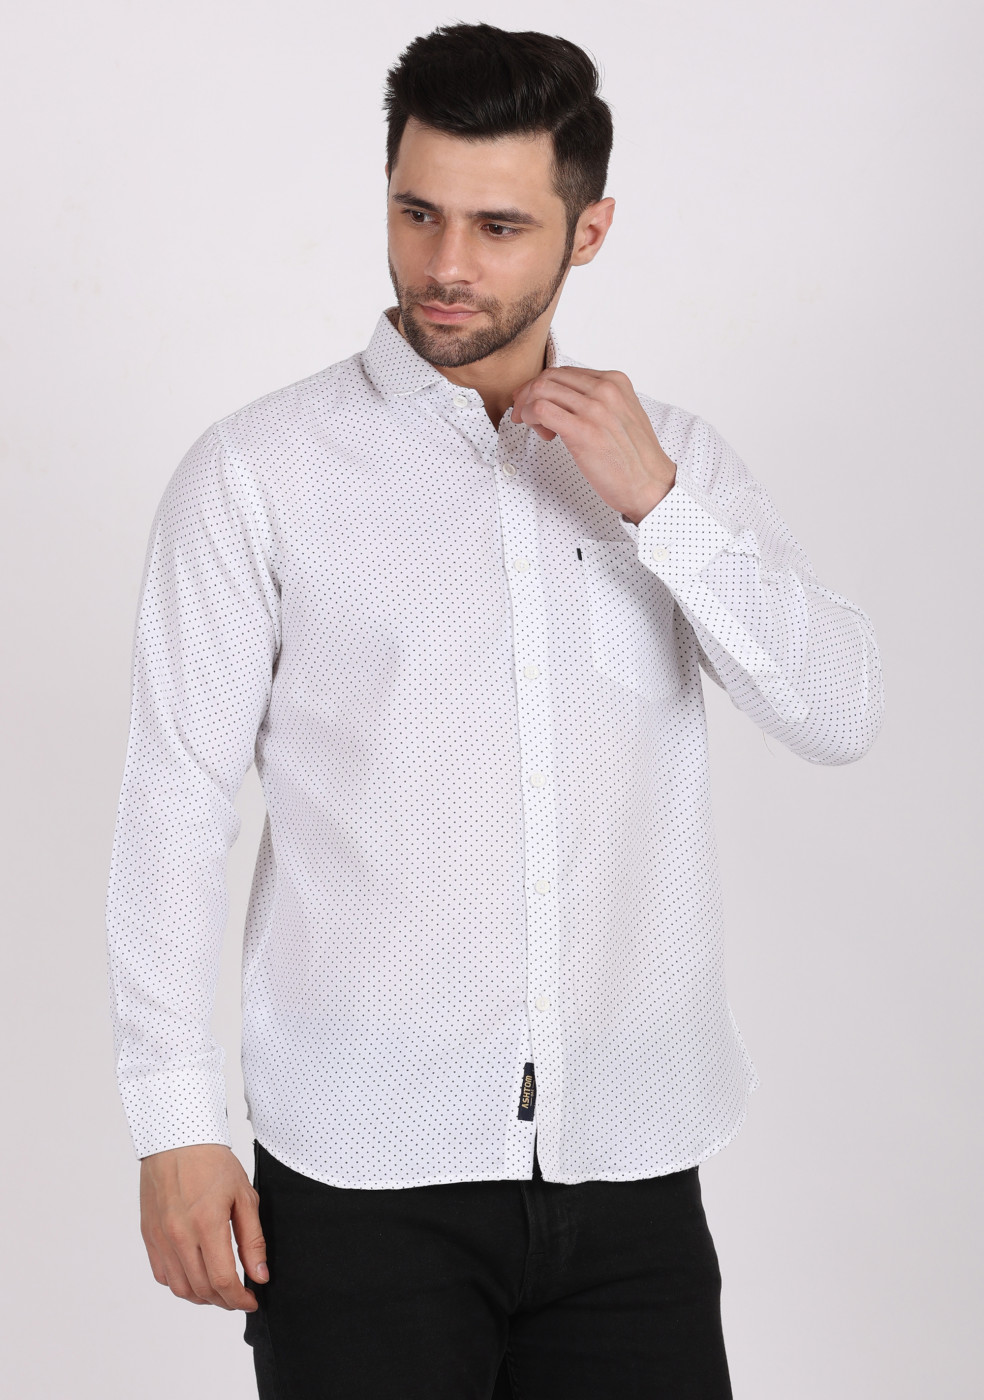 ASHTOM White Print Shirt For Men